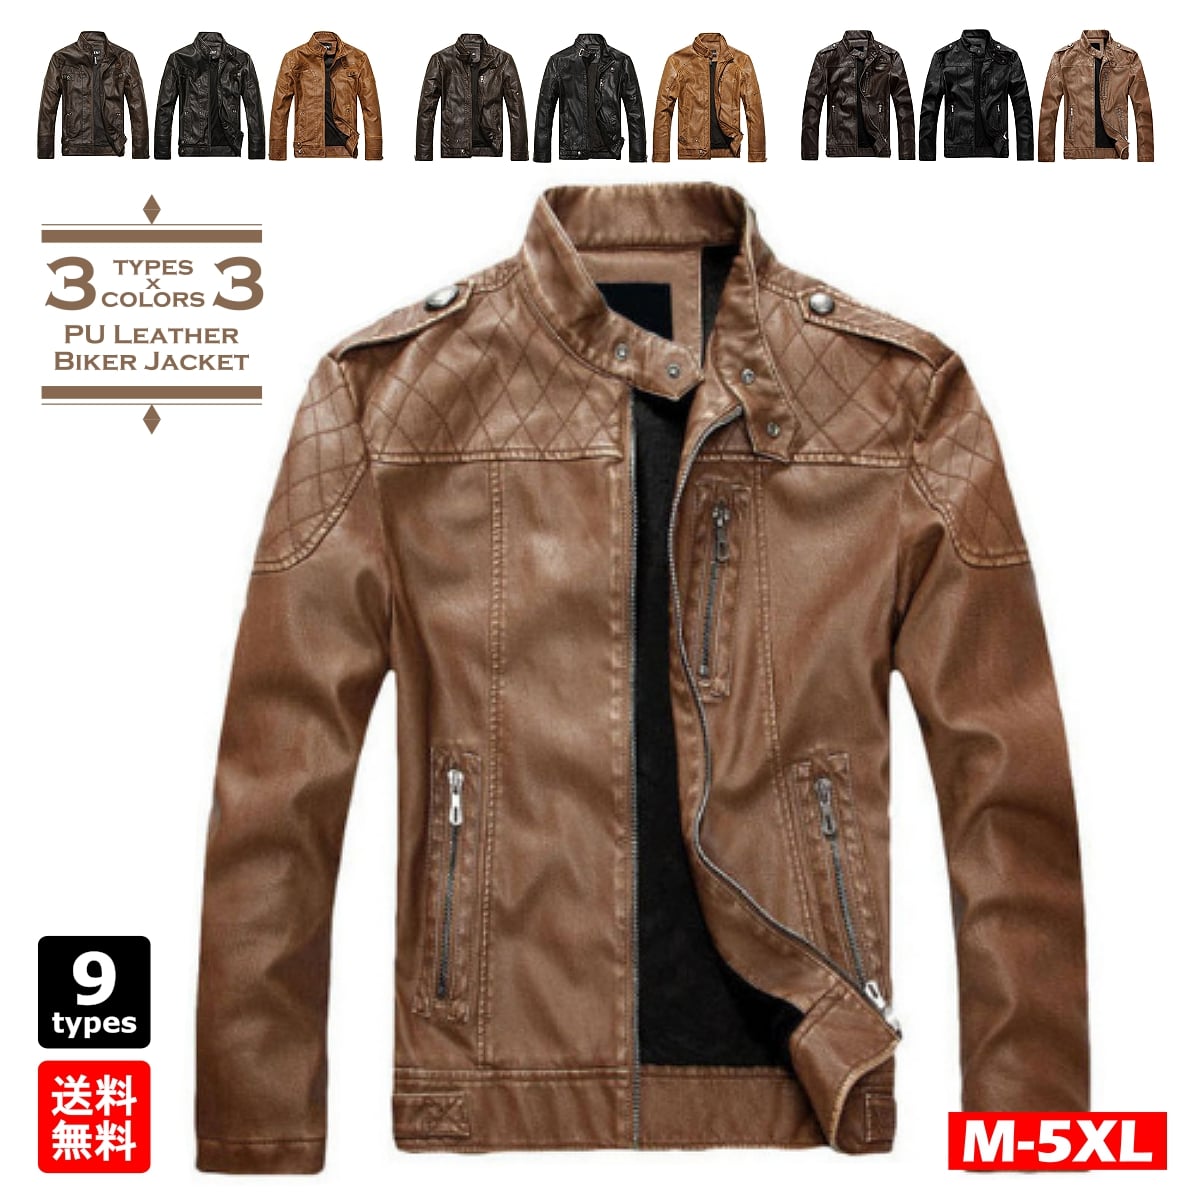 【楽天市場】【送料無料!】全9タイプ [Men's Design Stitches PU Leather Riders Jacket] メンズ